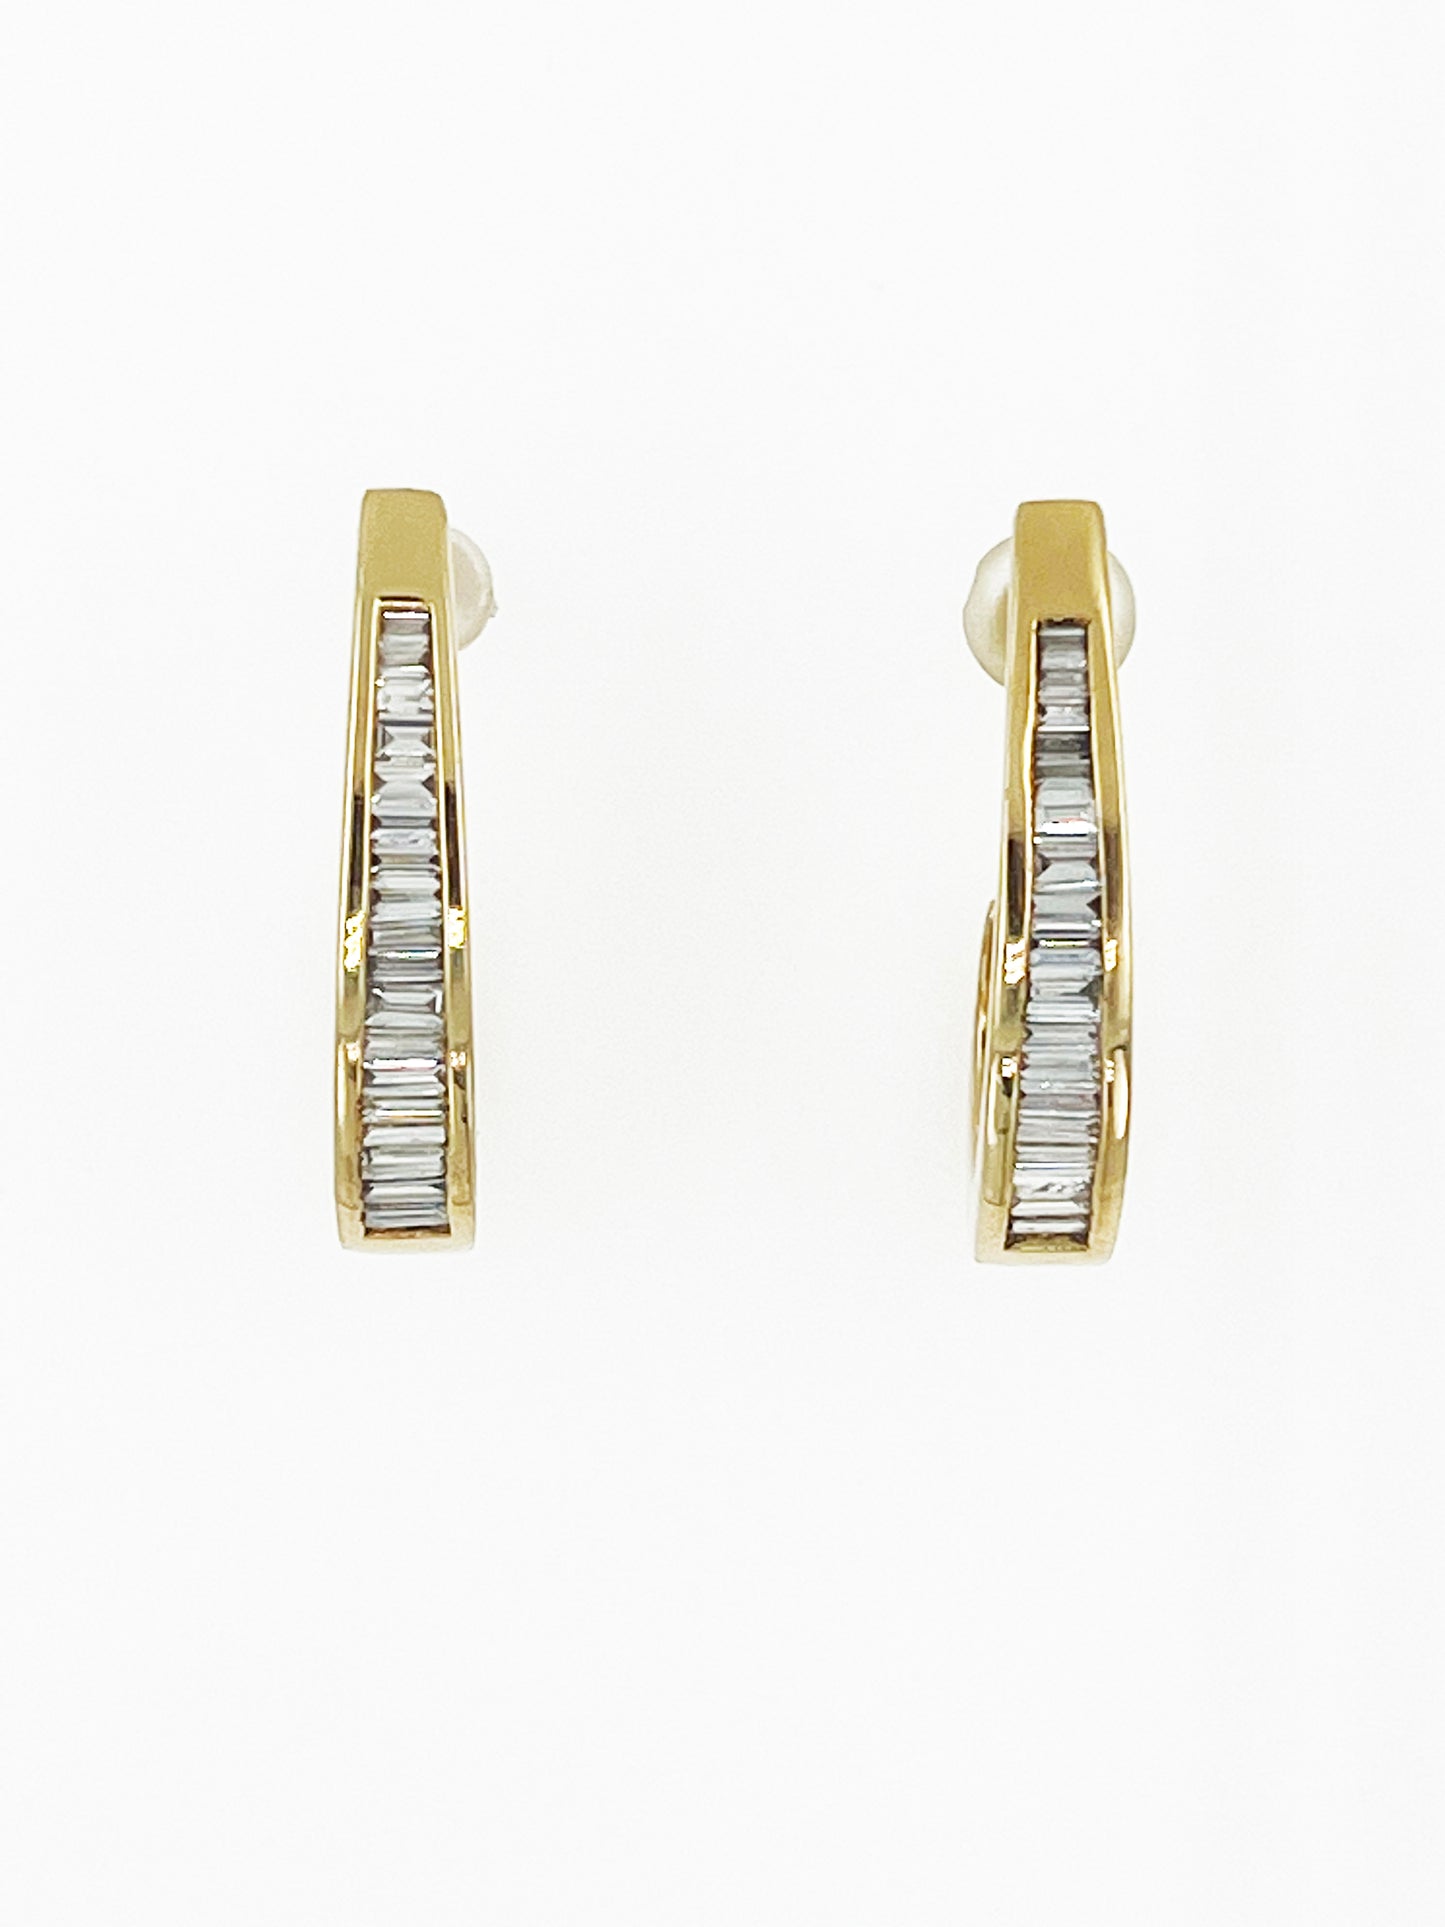 Baguette Diamond Earrings in 14k Yellow Gold